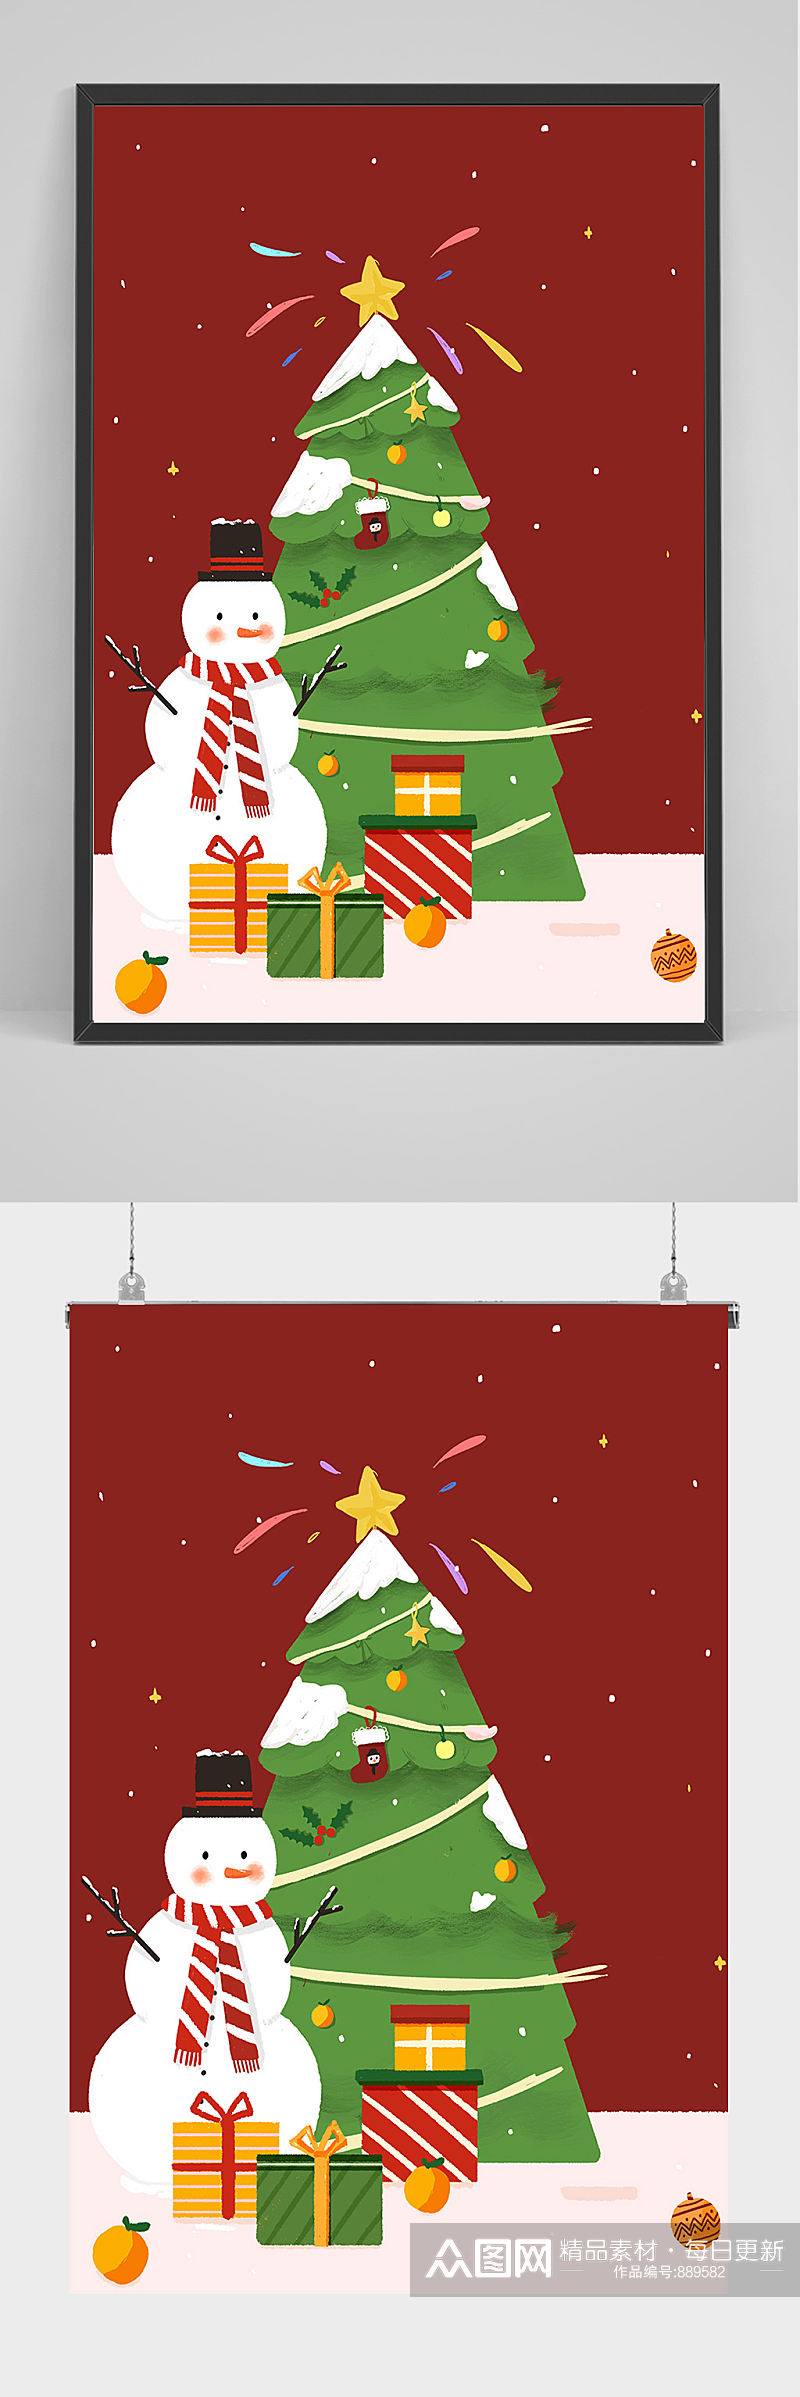 精品圣诞雪人圣诞树手绘插画设计素材